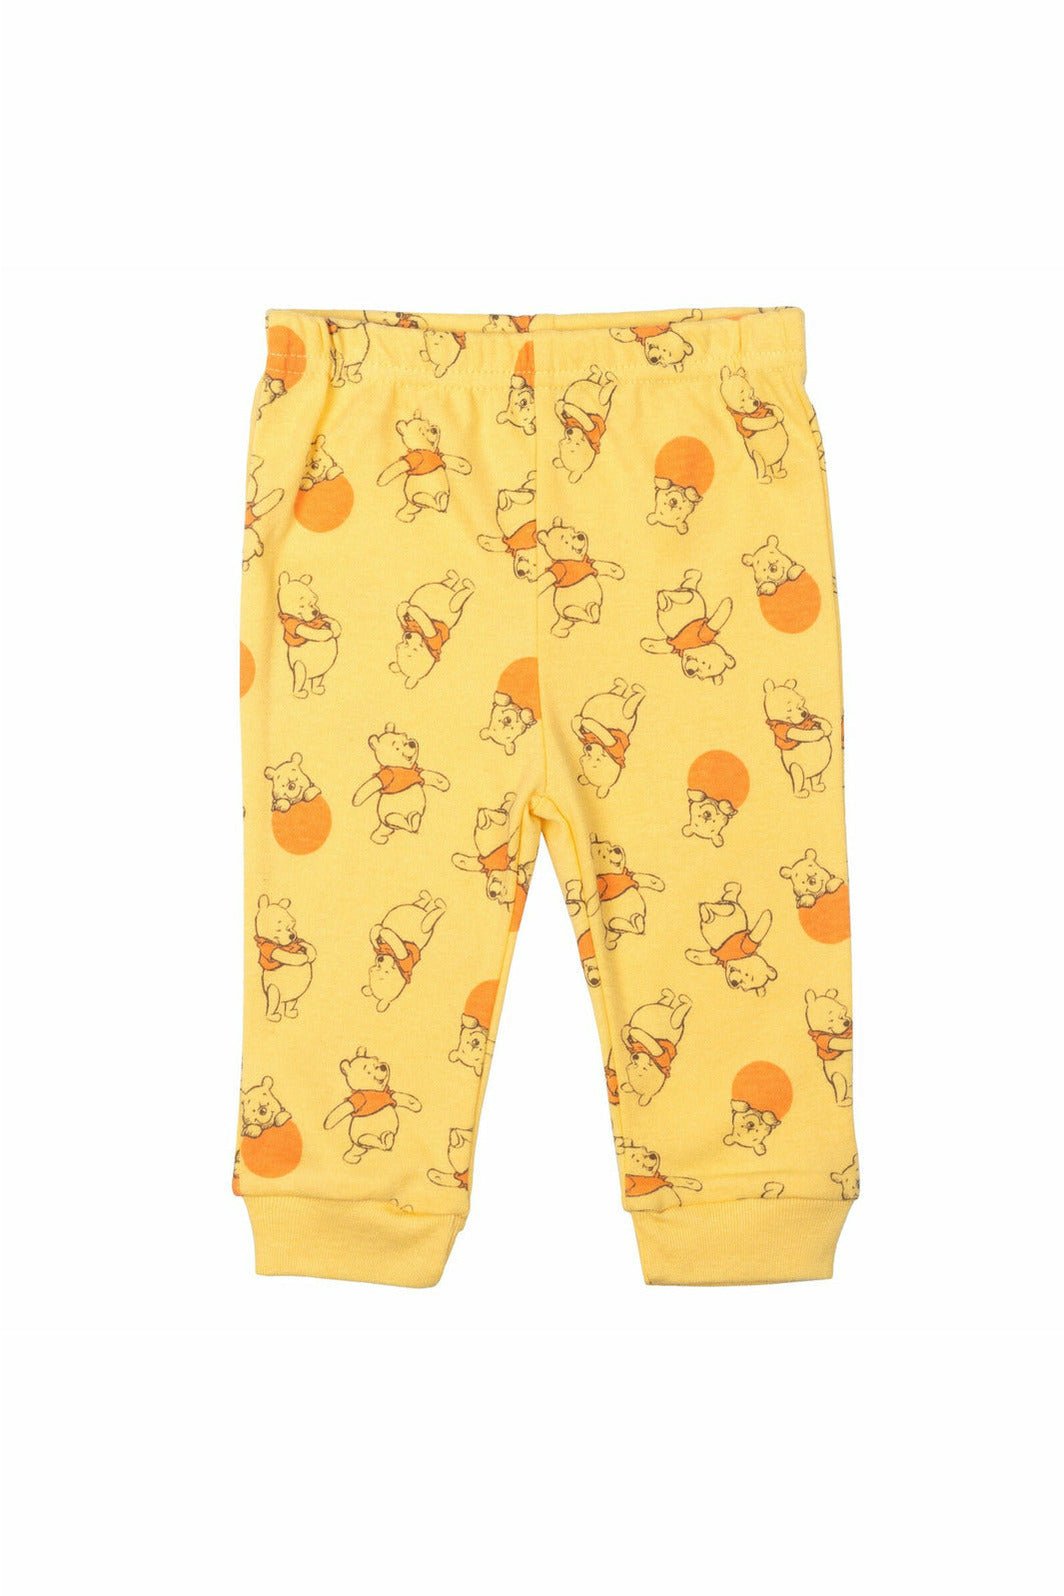 Winnie the Pooh 4 Piece Outfit Set: Bodysuit Pants Bib Hat - imagikids